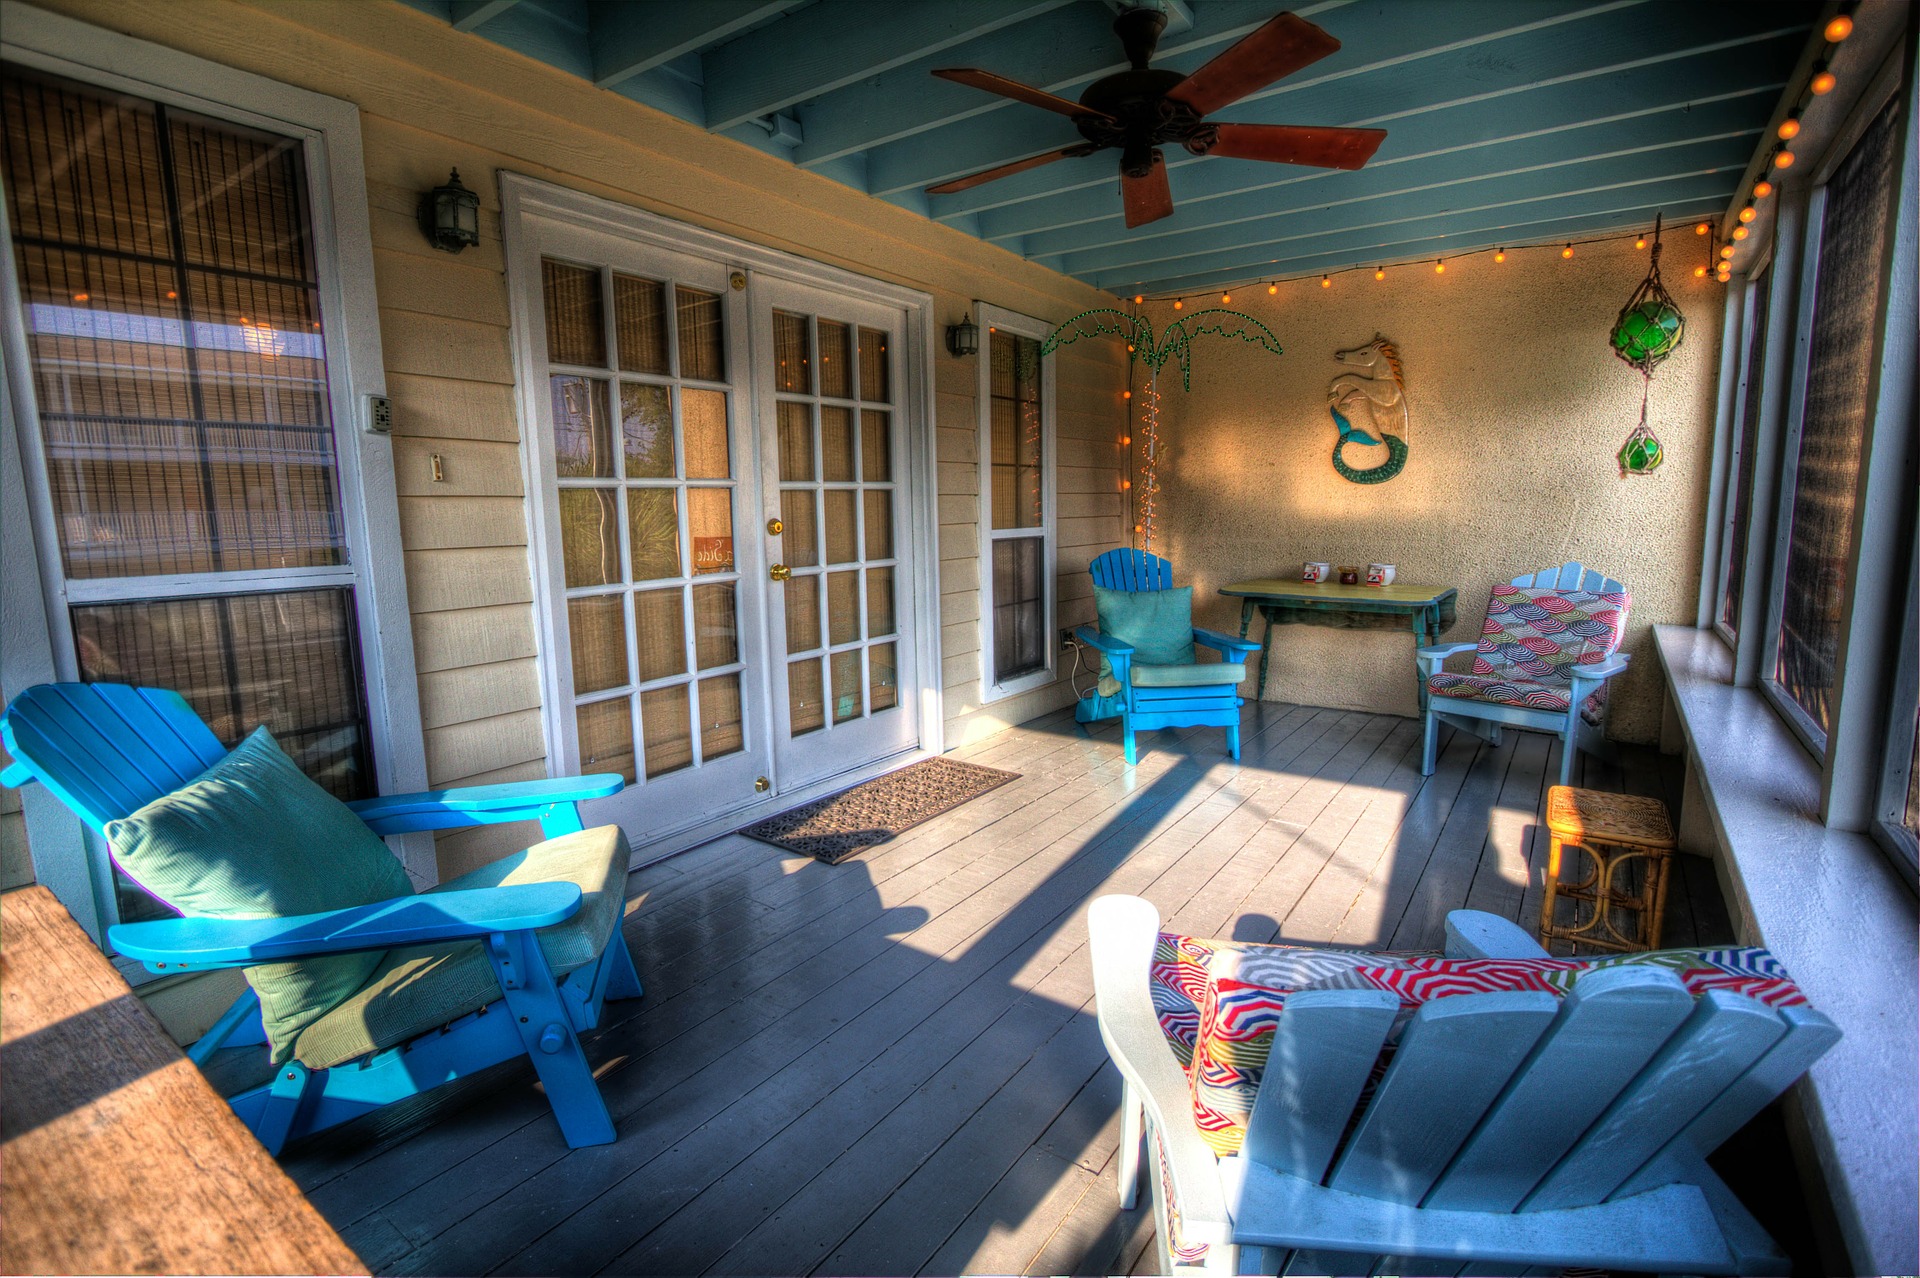 Overdekt terras - veranda met zonwering #zonwering #veranda #tuin #overkapping